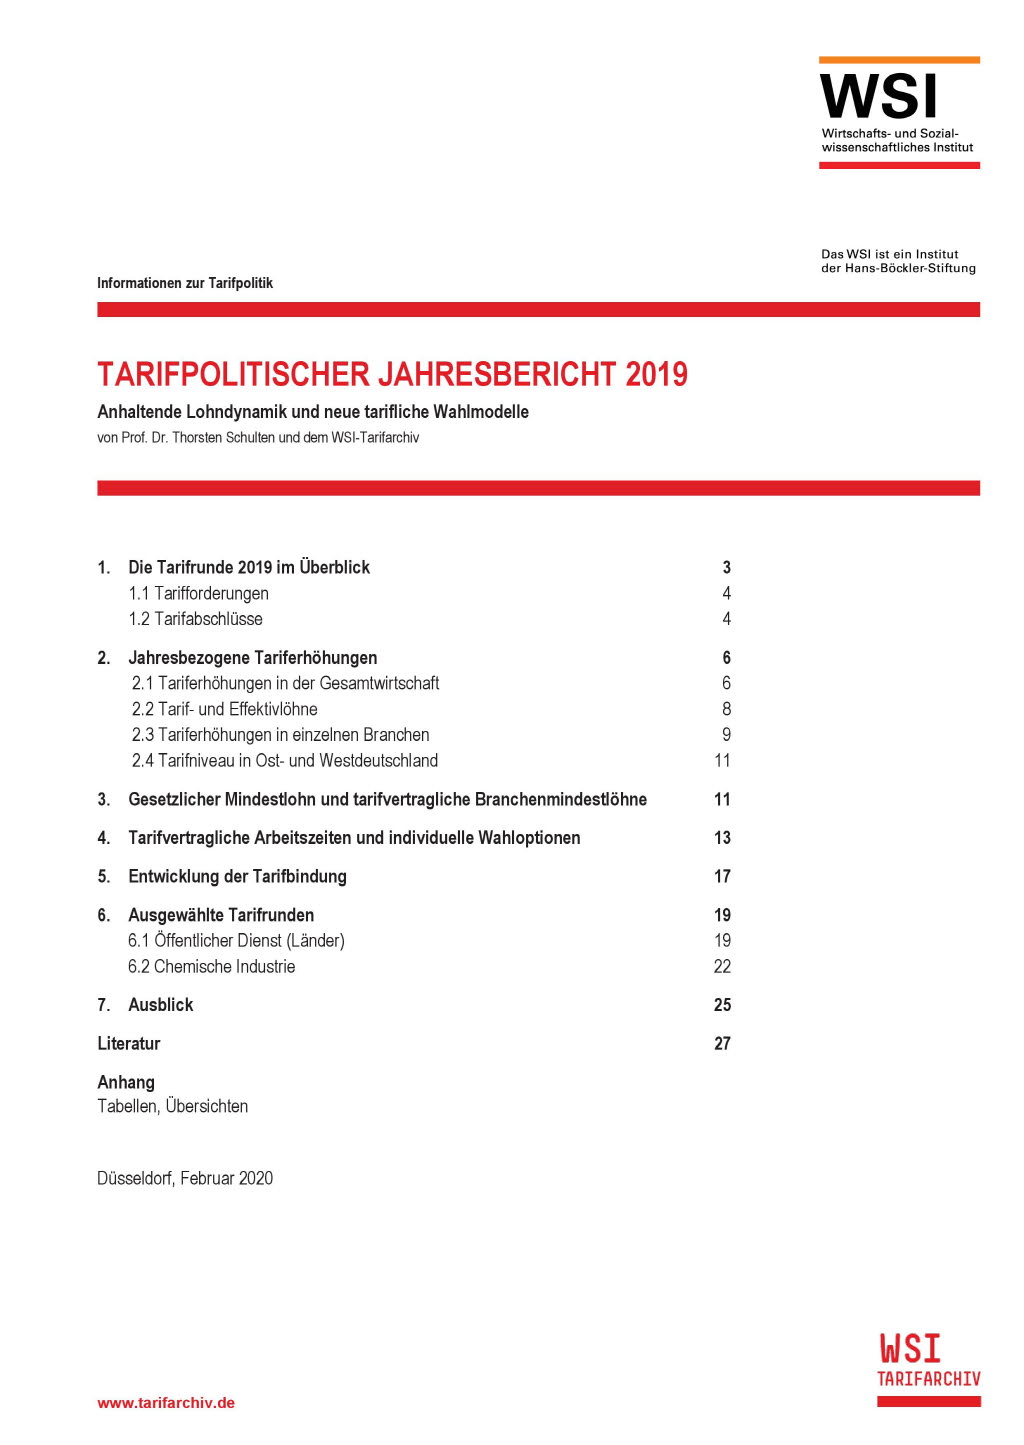 Tarifpolitischer Jahresbericht 2019